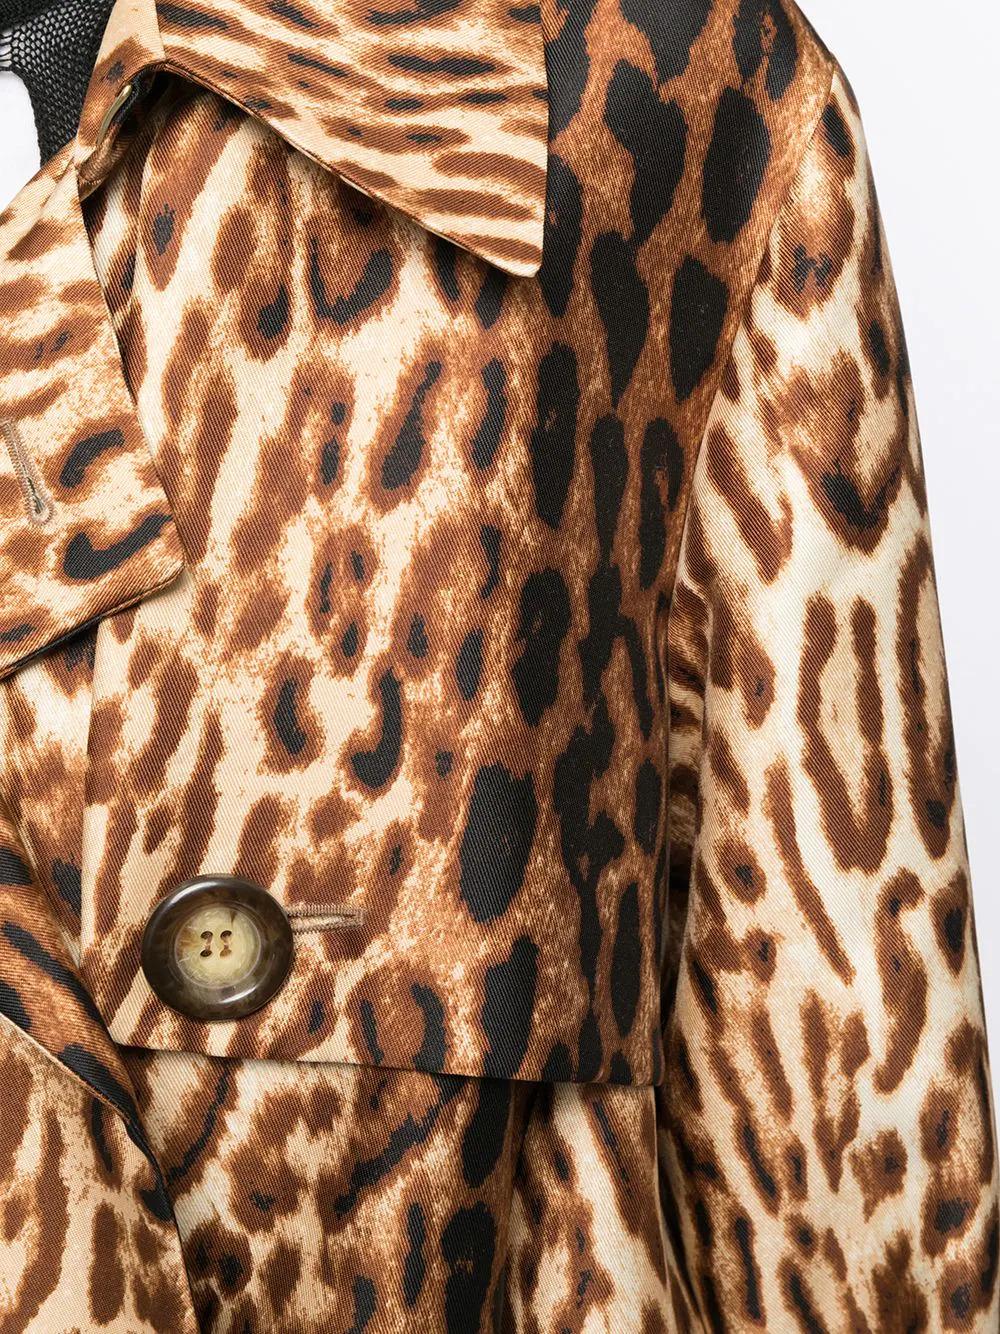 Fabriqué en France à partir d'un doux mélange de laine et de soie, ce trench-coat d'occasion de Céline présente une forme évasée, des manches longues et un double boutonnage, avec un motif léopard audacieux, pour une touche de sophistication chic et